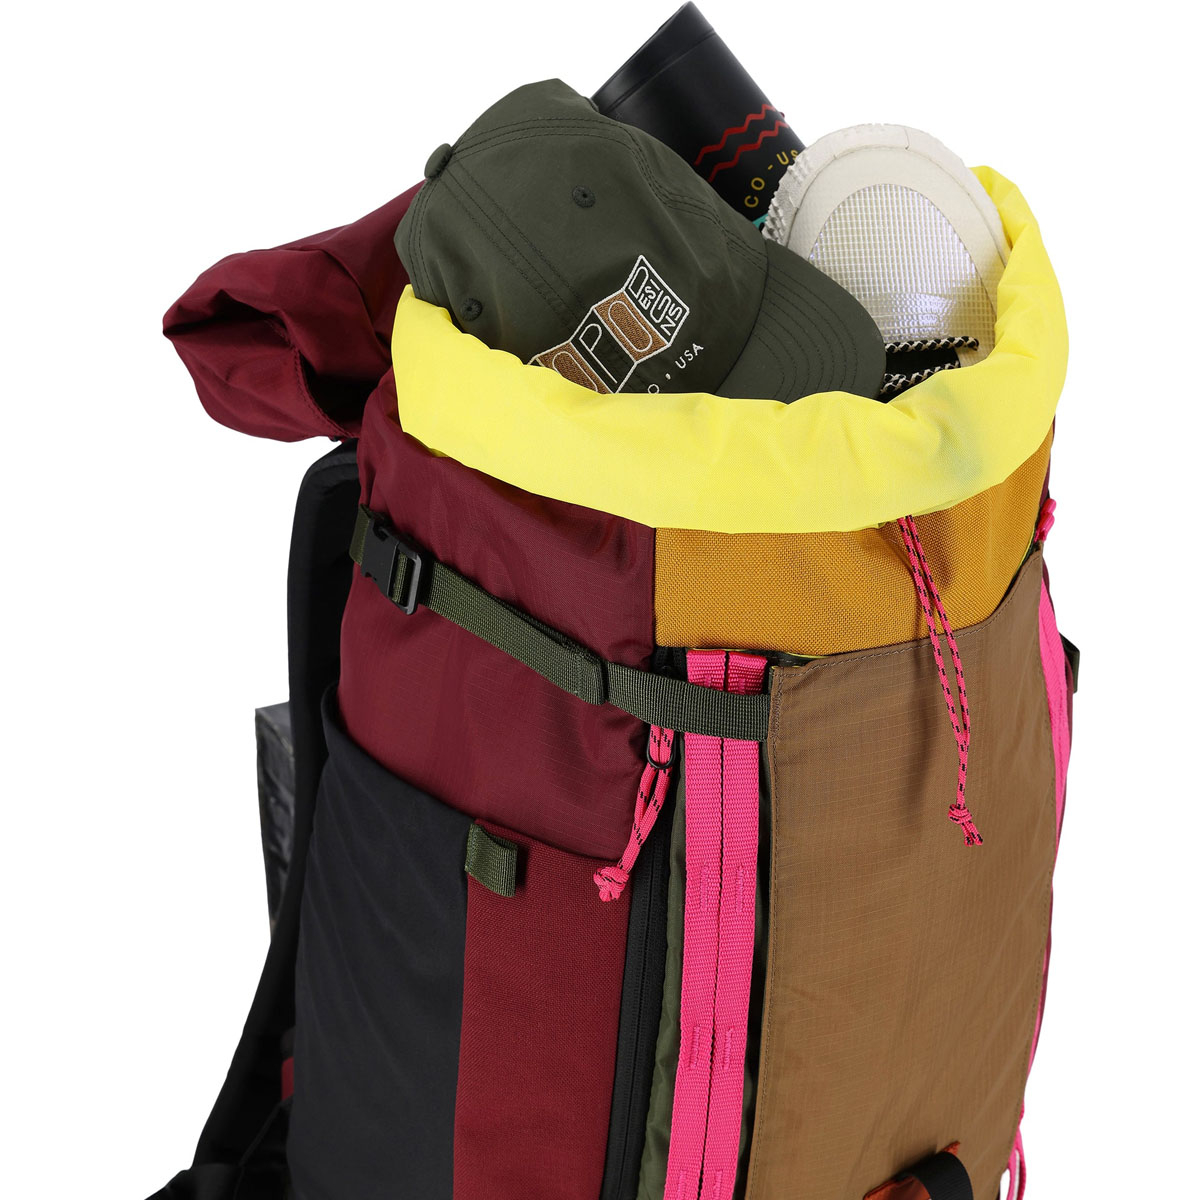 Topo Designs Mountain Pack 28L, wasserabweisende Futter mit eine auffallend helle Farbe